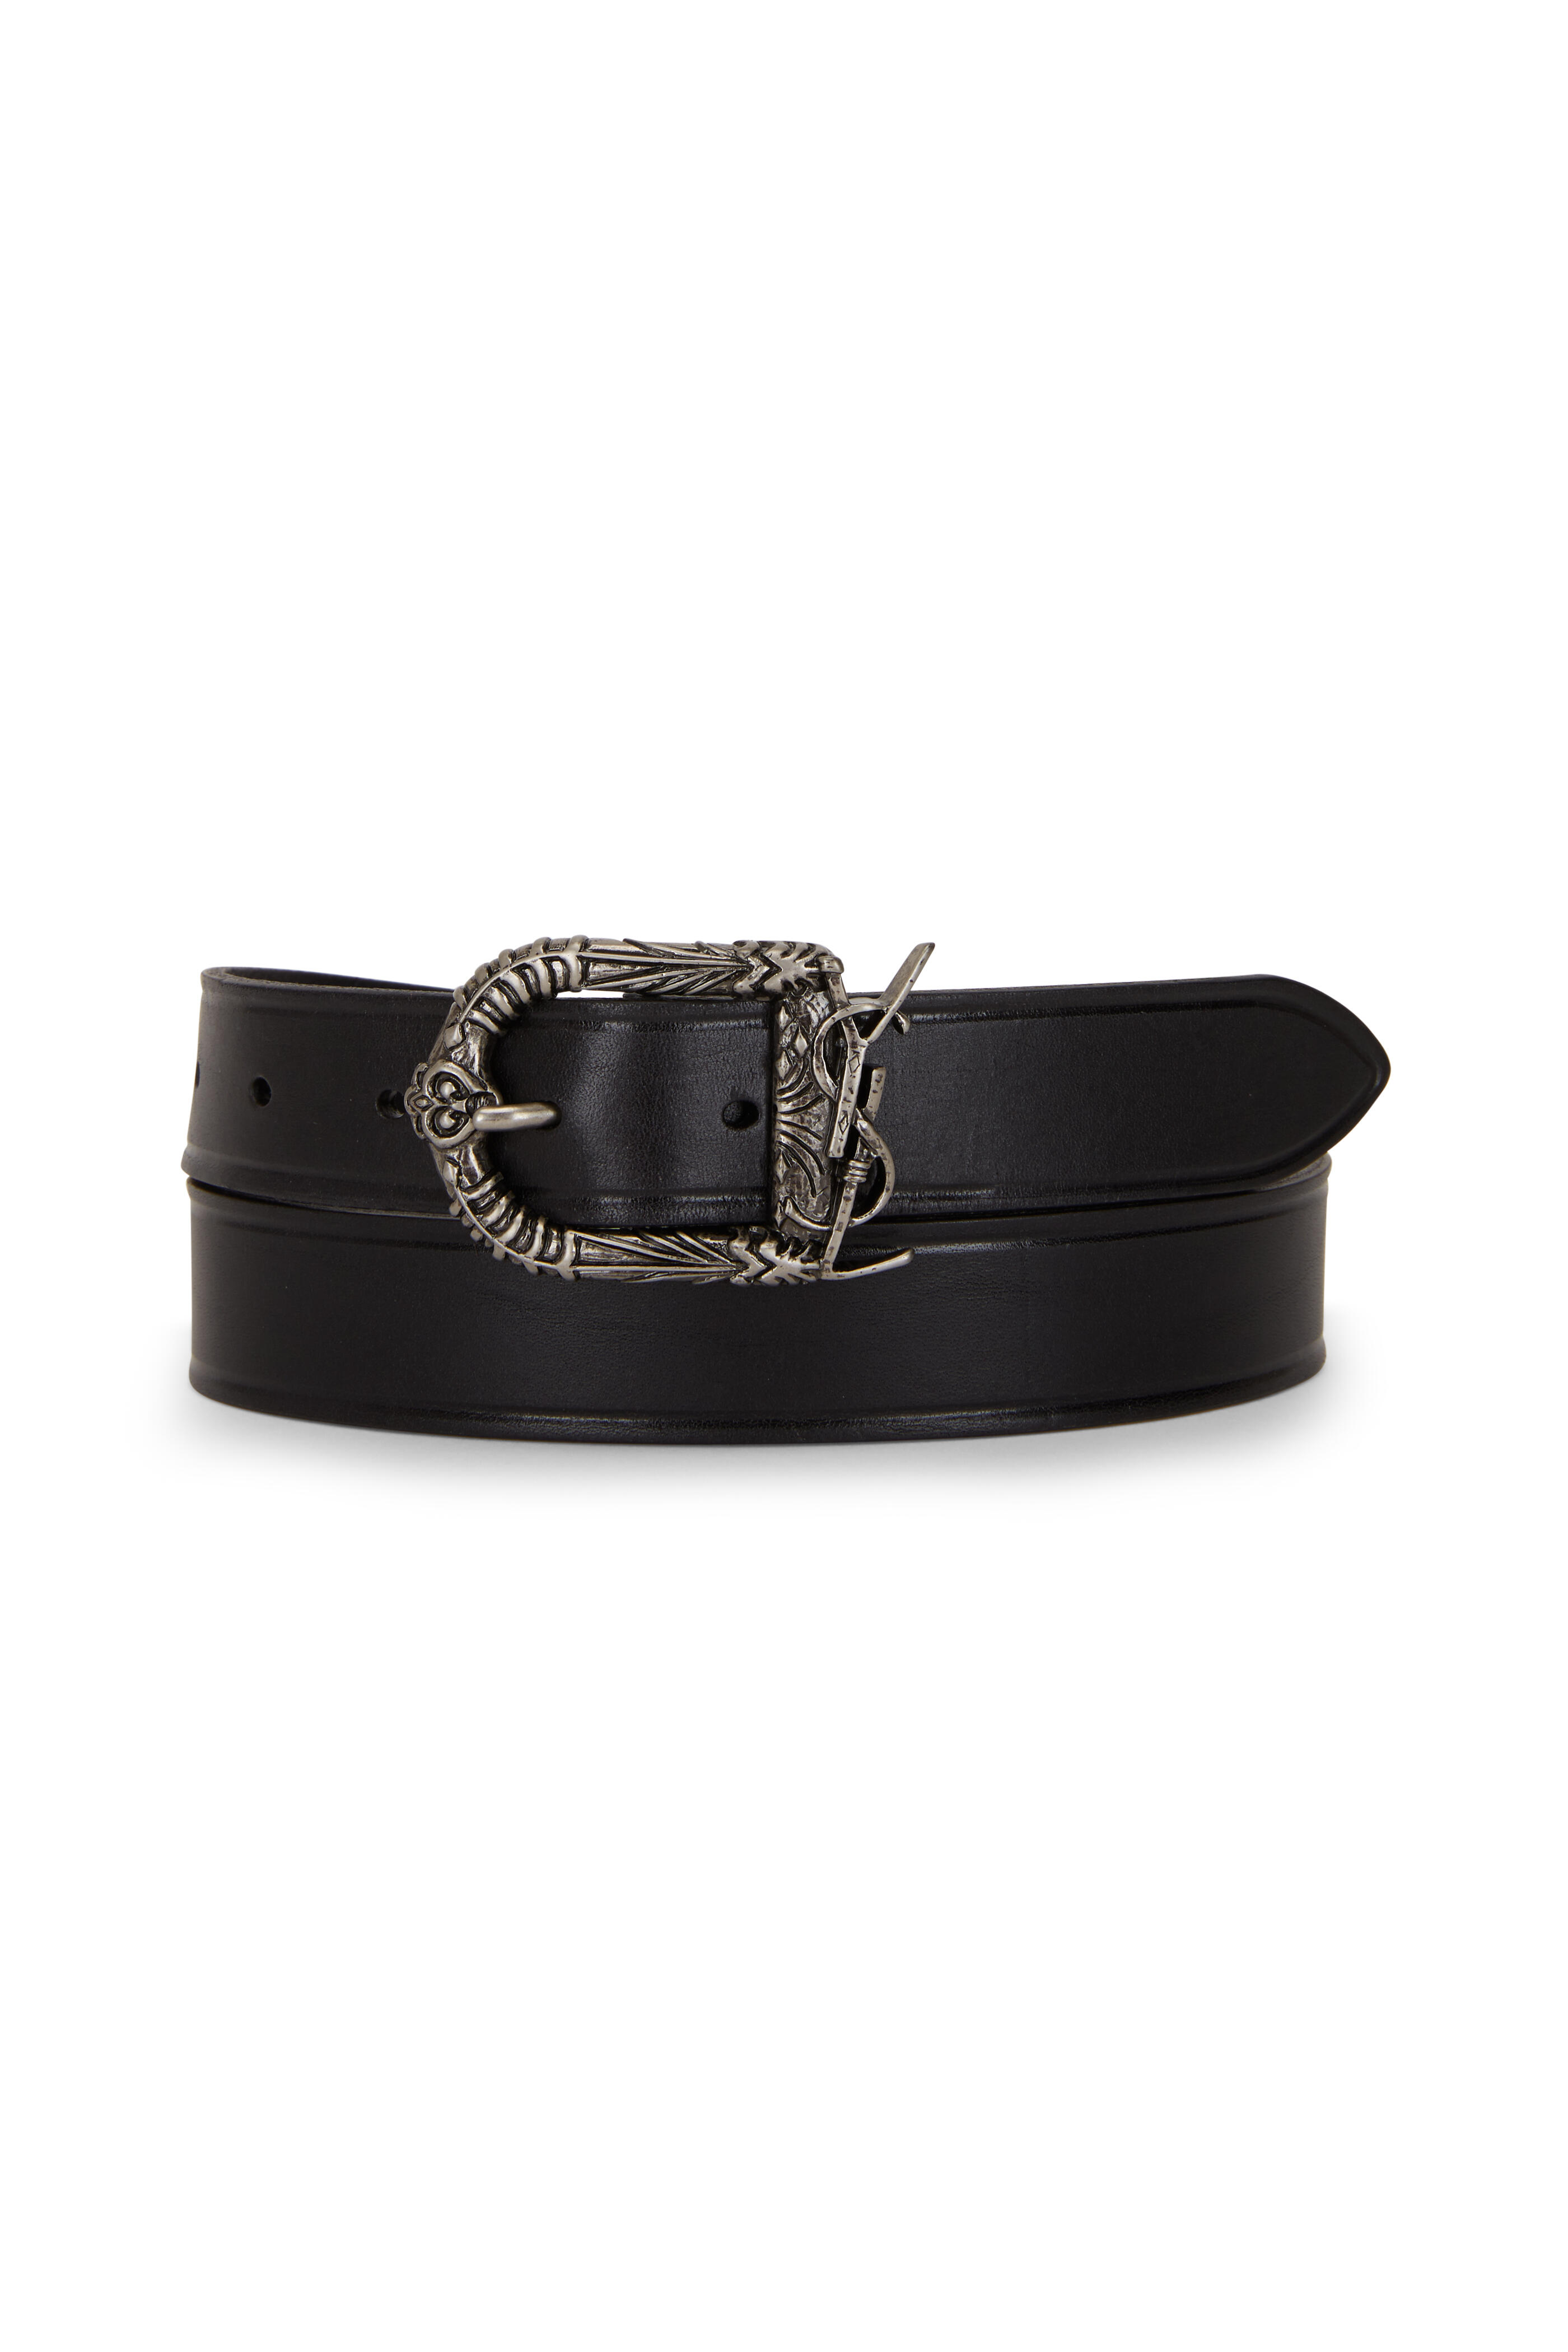 Sell lady belt man belt fashion blet YSL belt real leather belt red belt